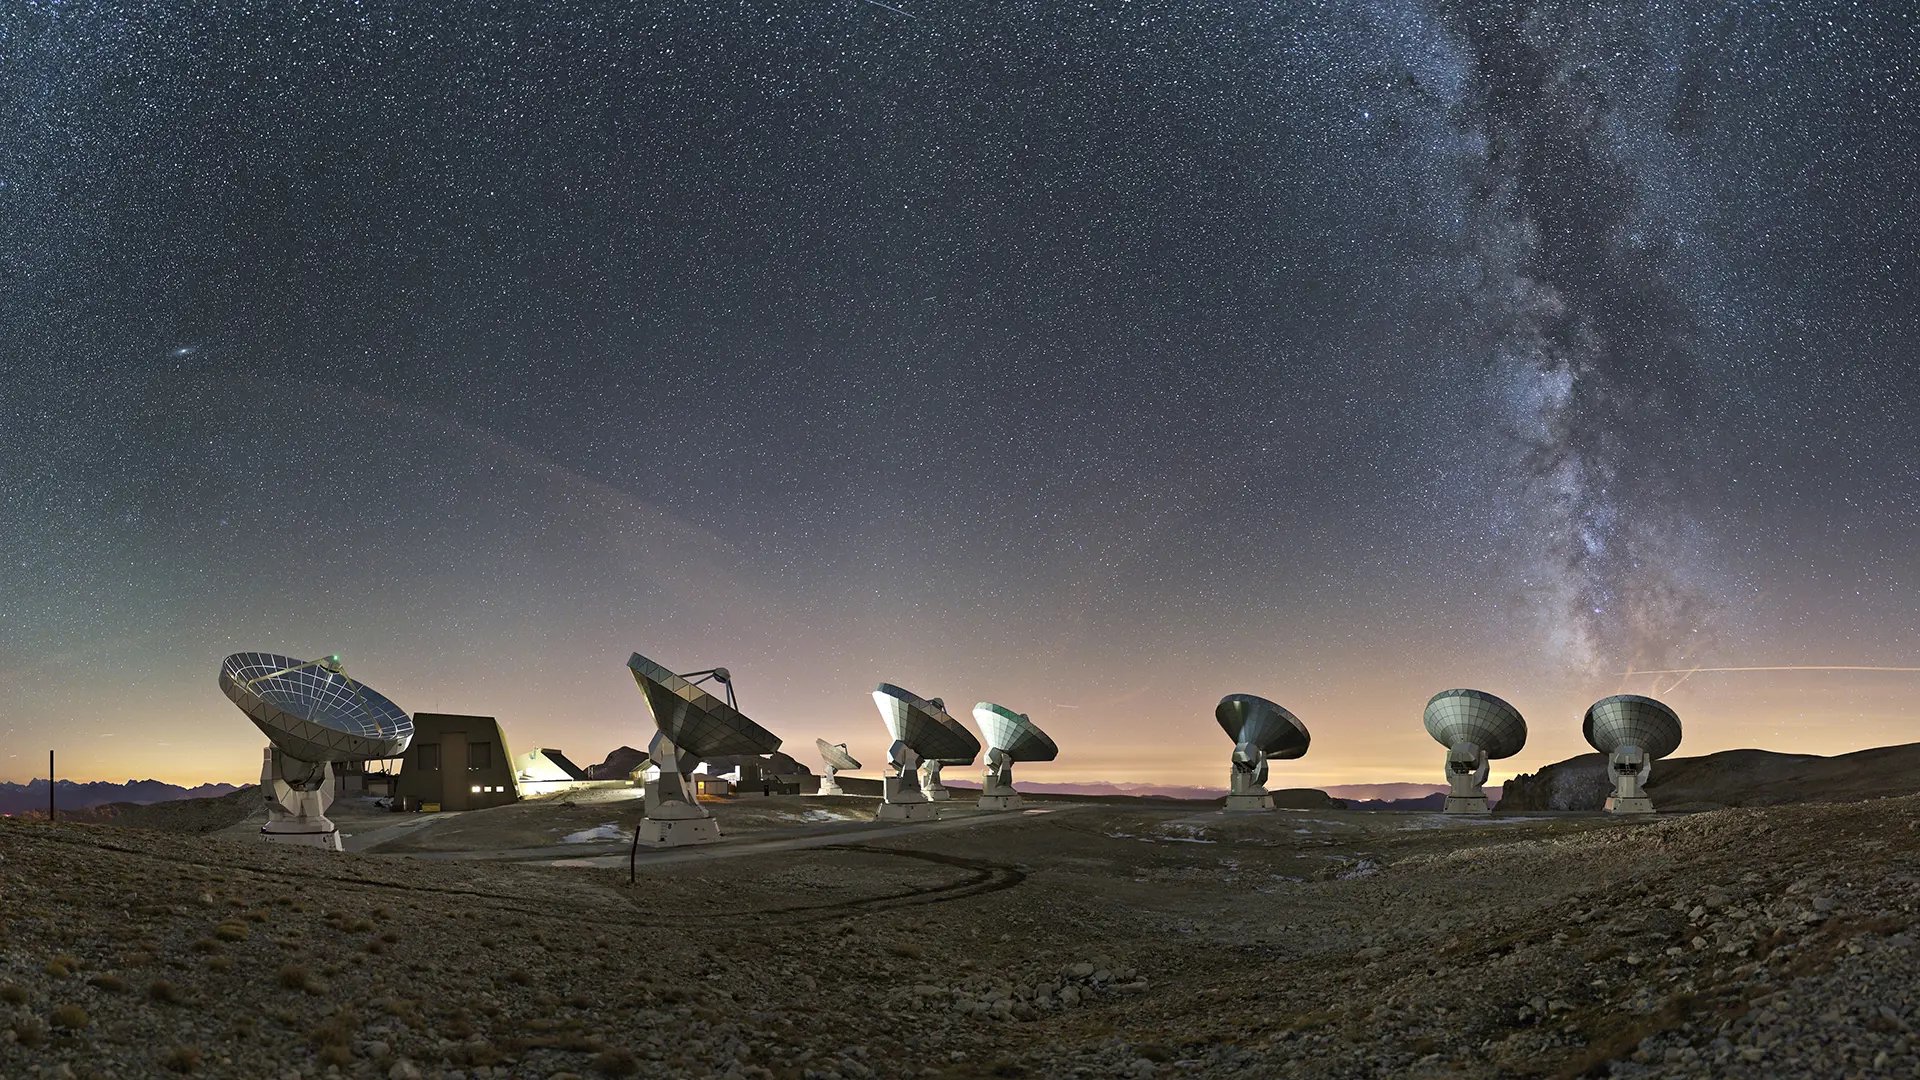 Radio telescopes at the NOEMA observatory